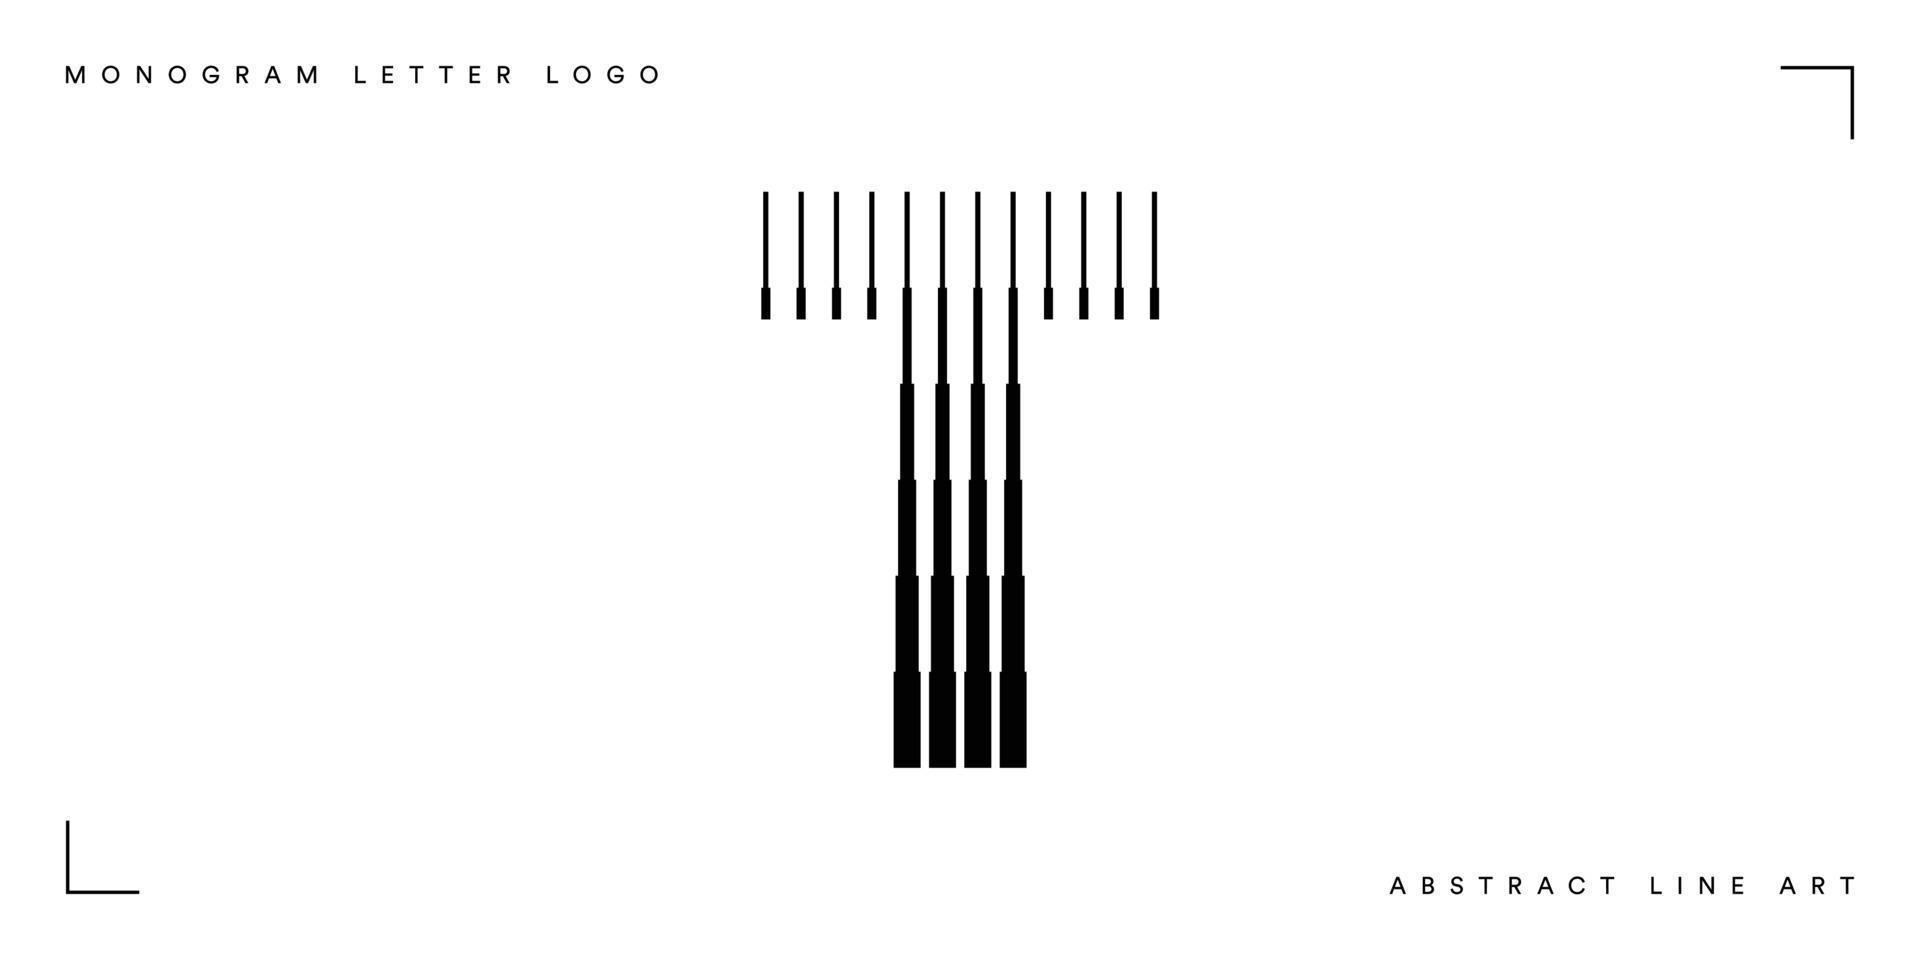 Abstract line art letter t monogram logo vector